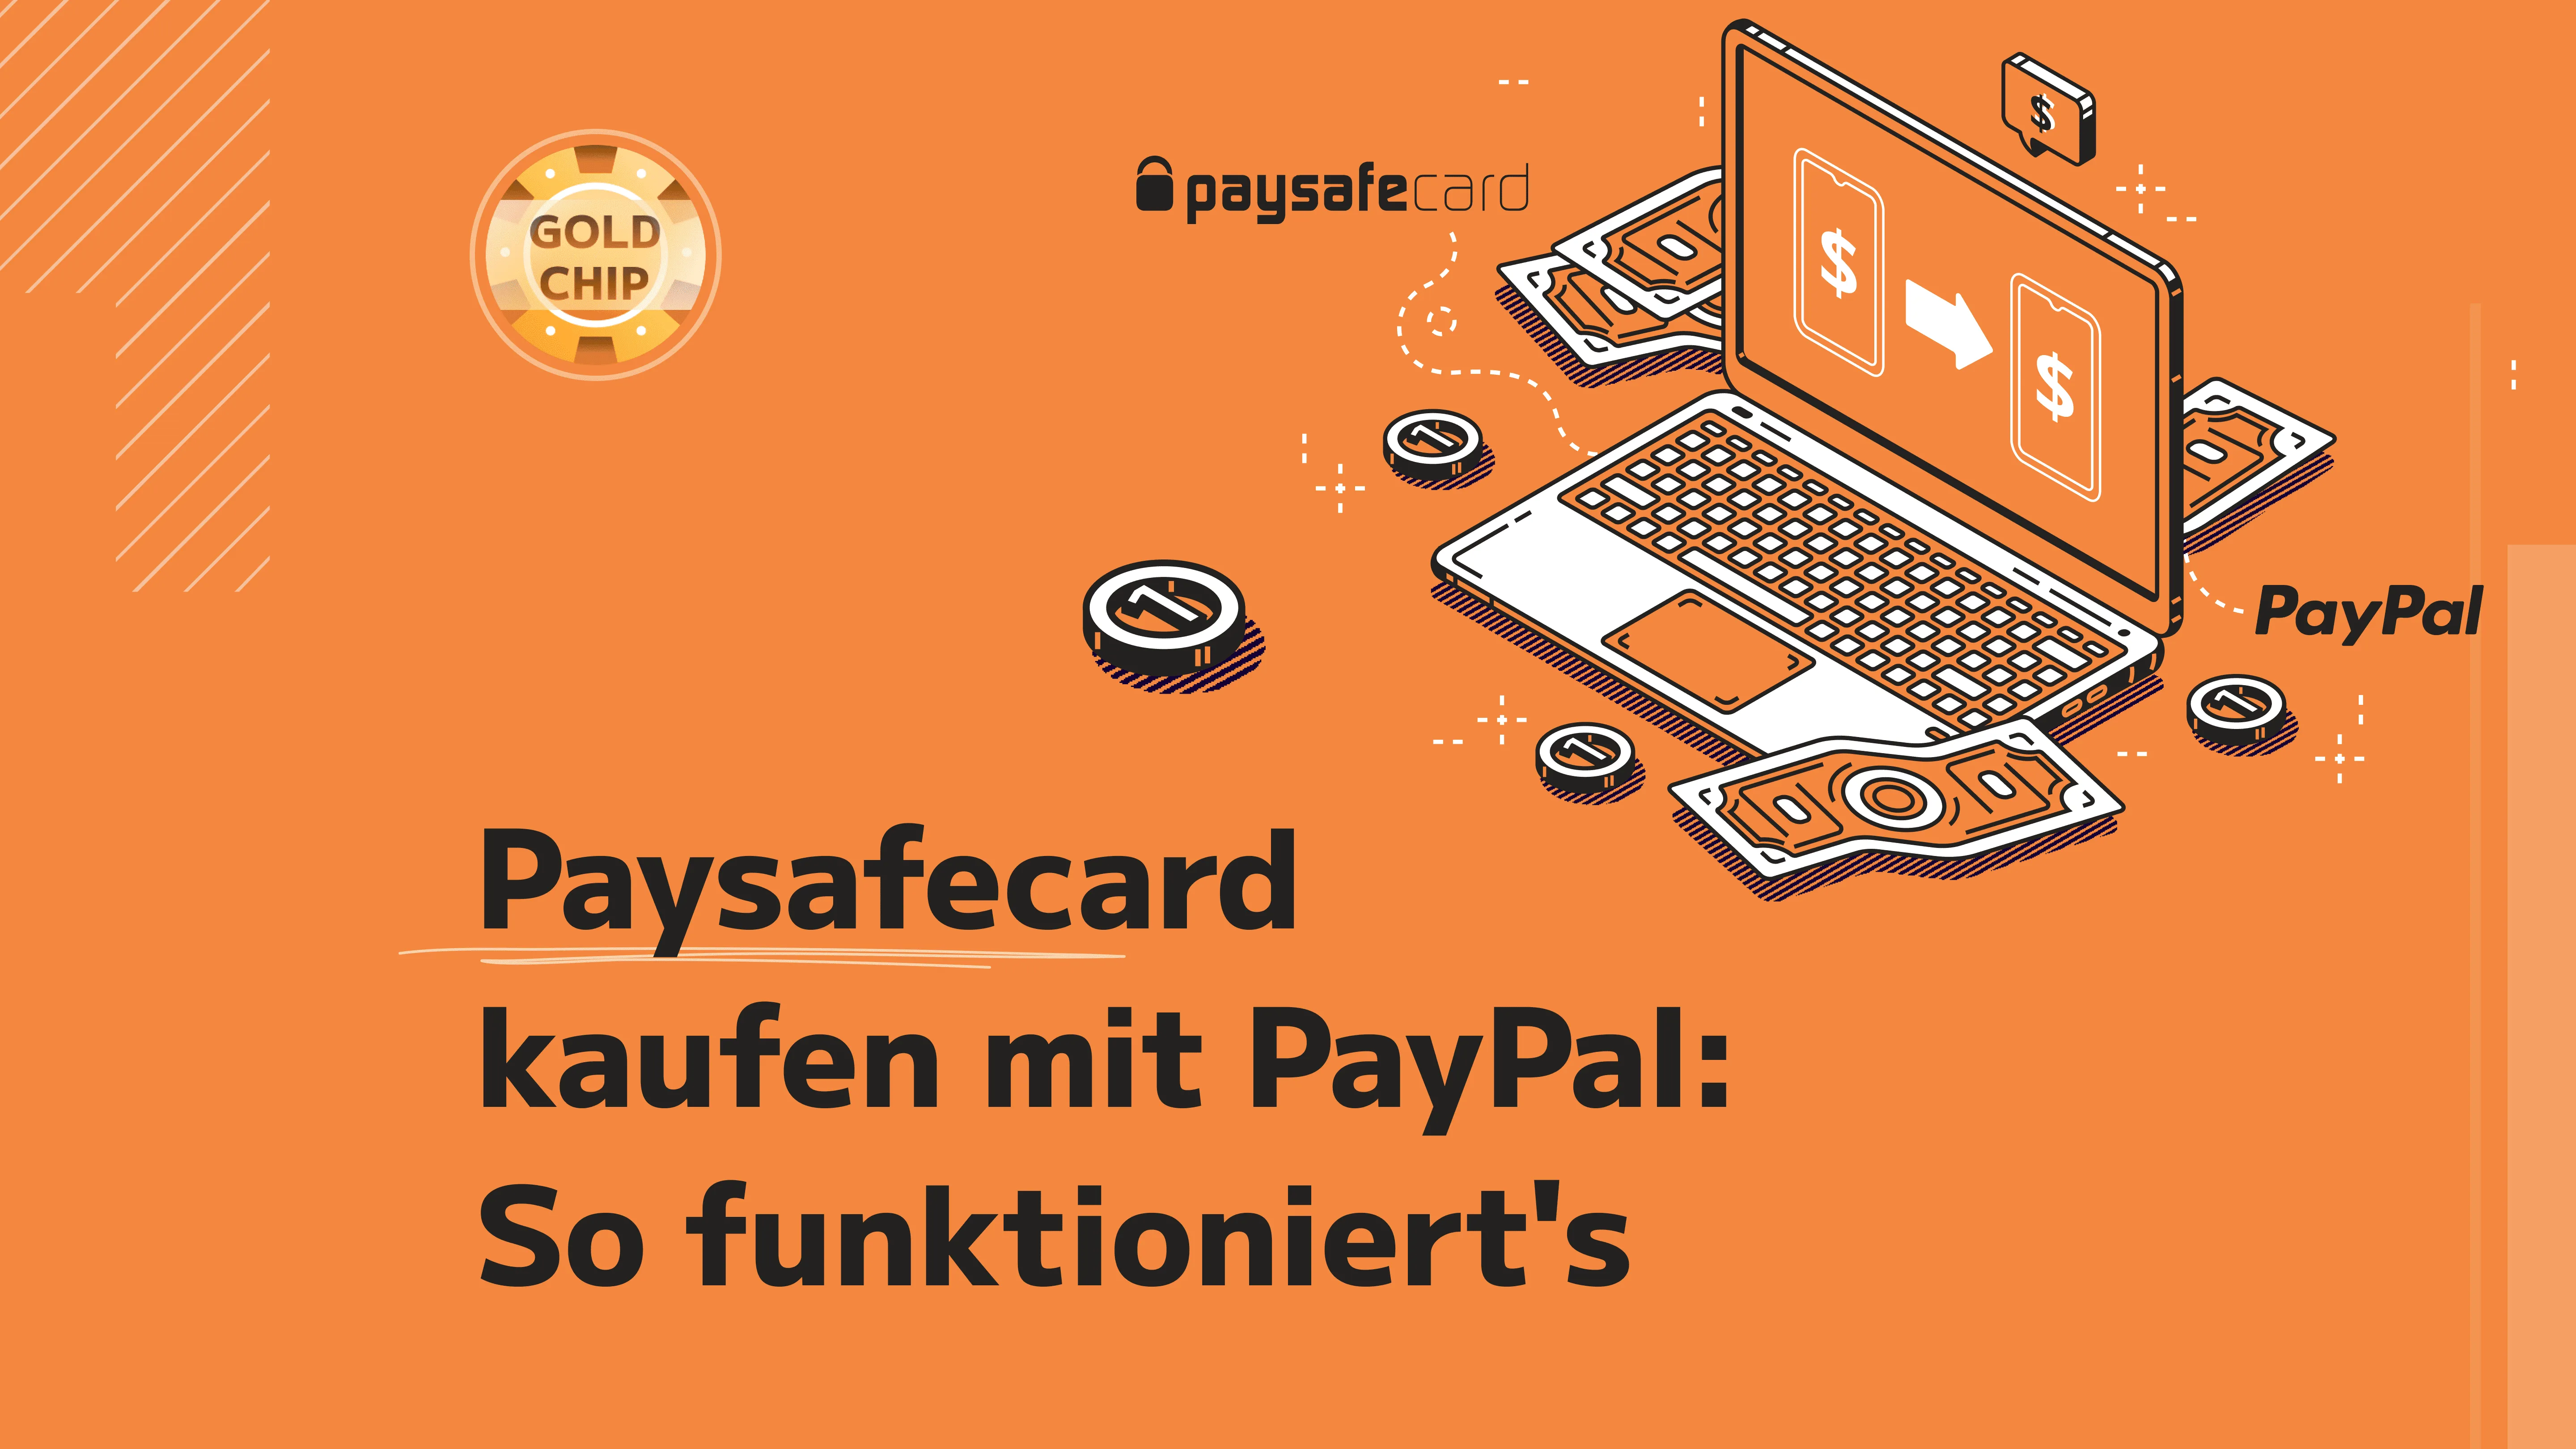 Paysafecard kaufen mit PayPal: So funktioniert's